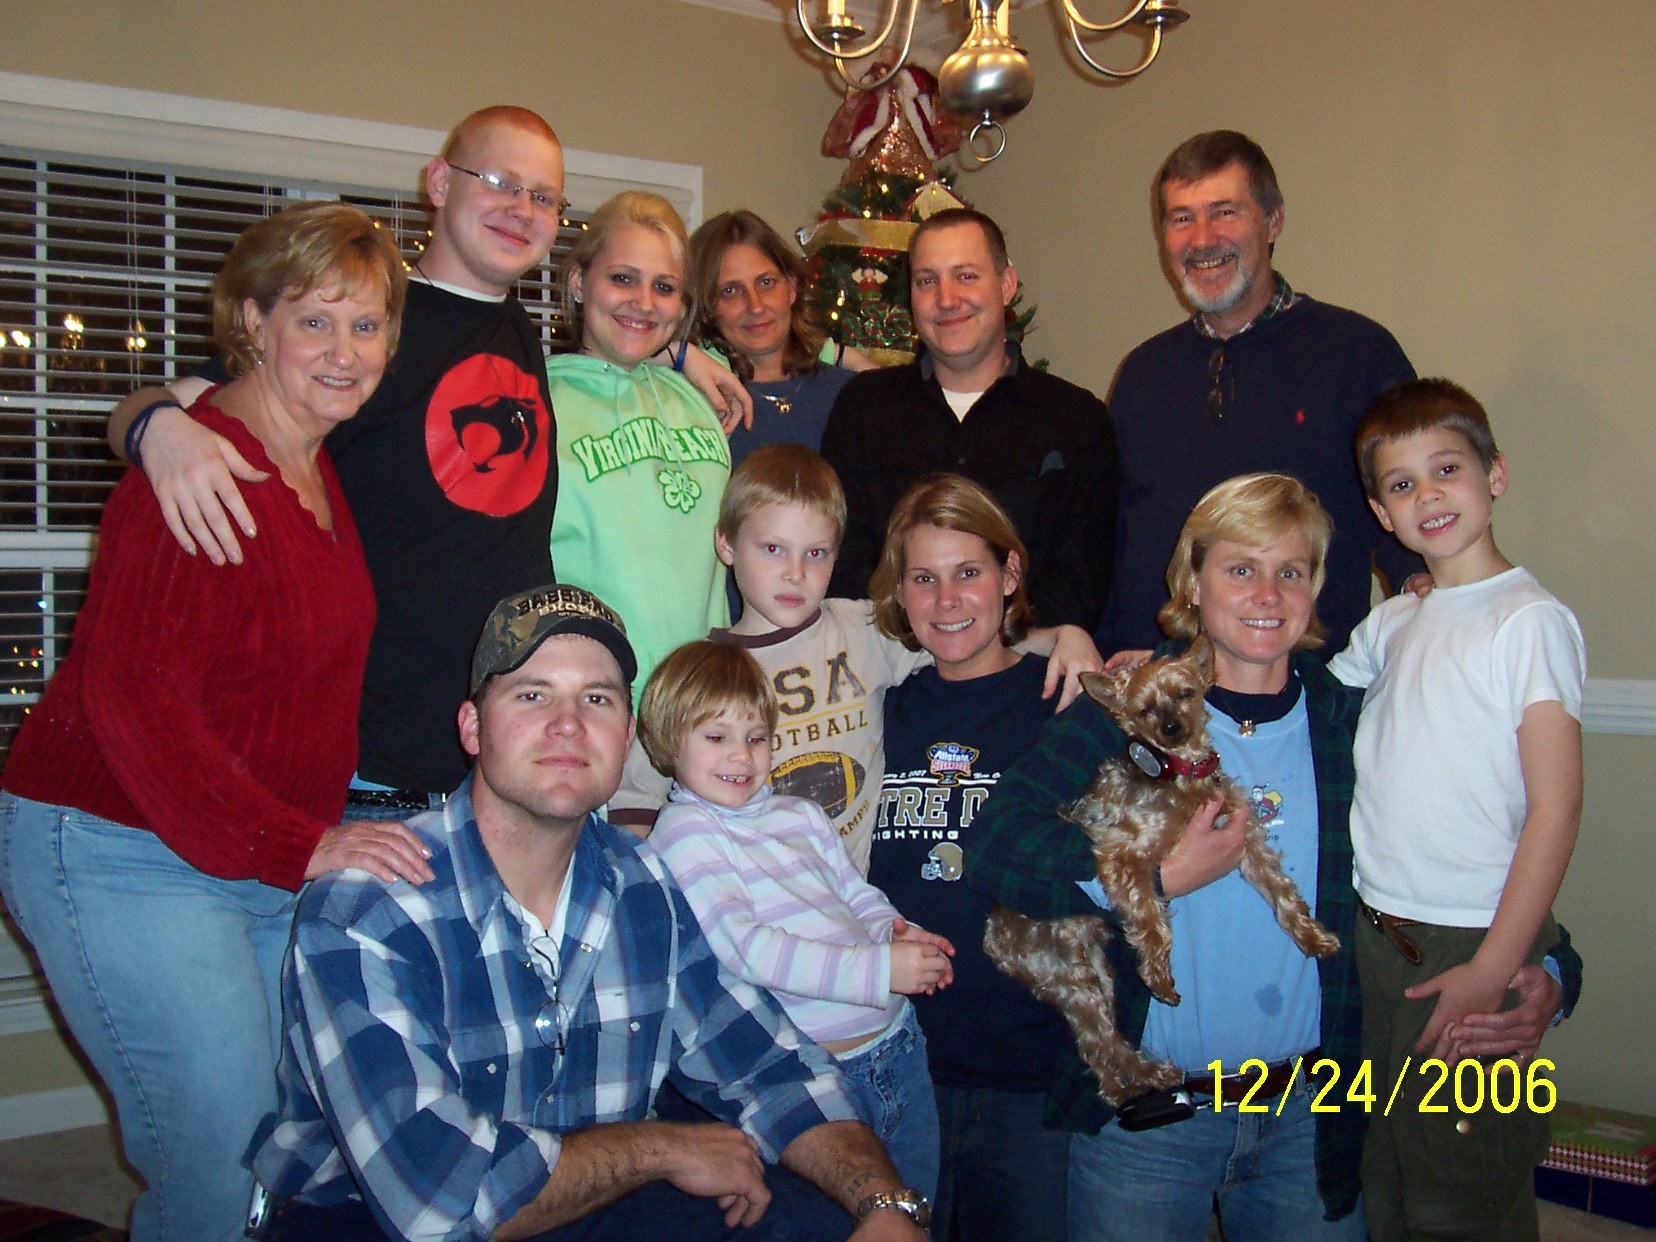 The David Lloyd - Sandra Dodson family on Christmas Eve.